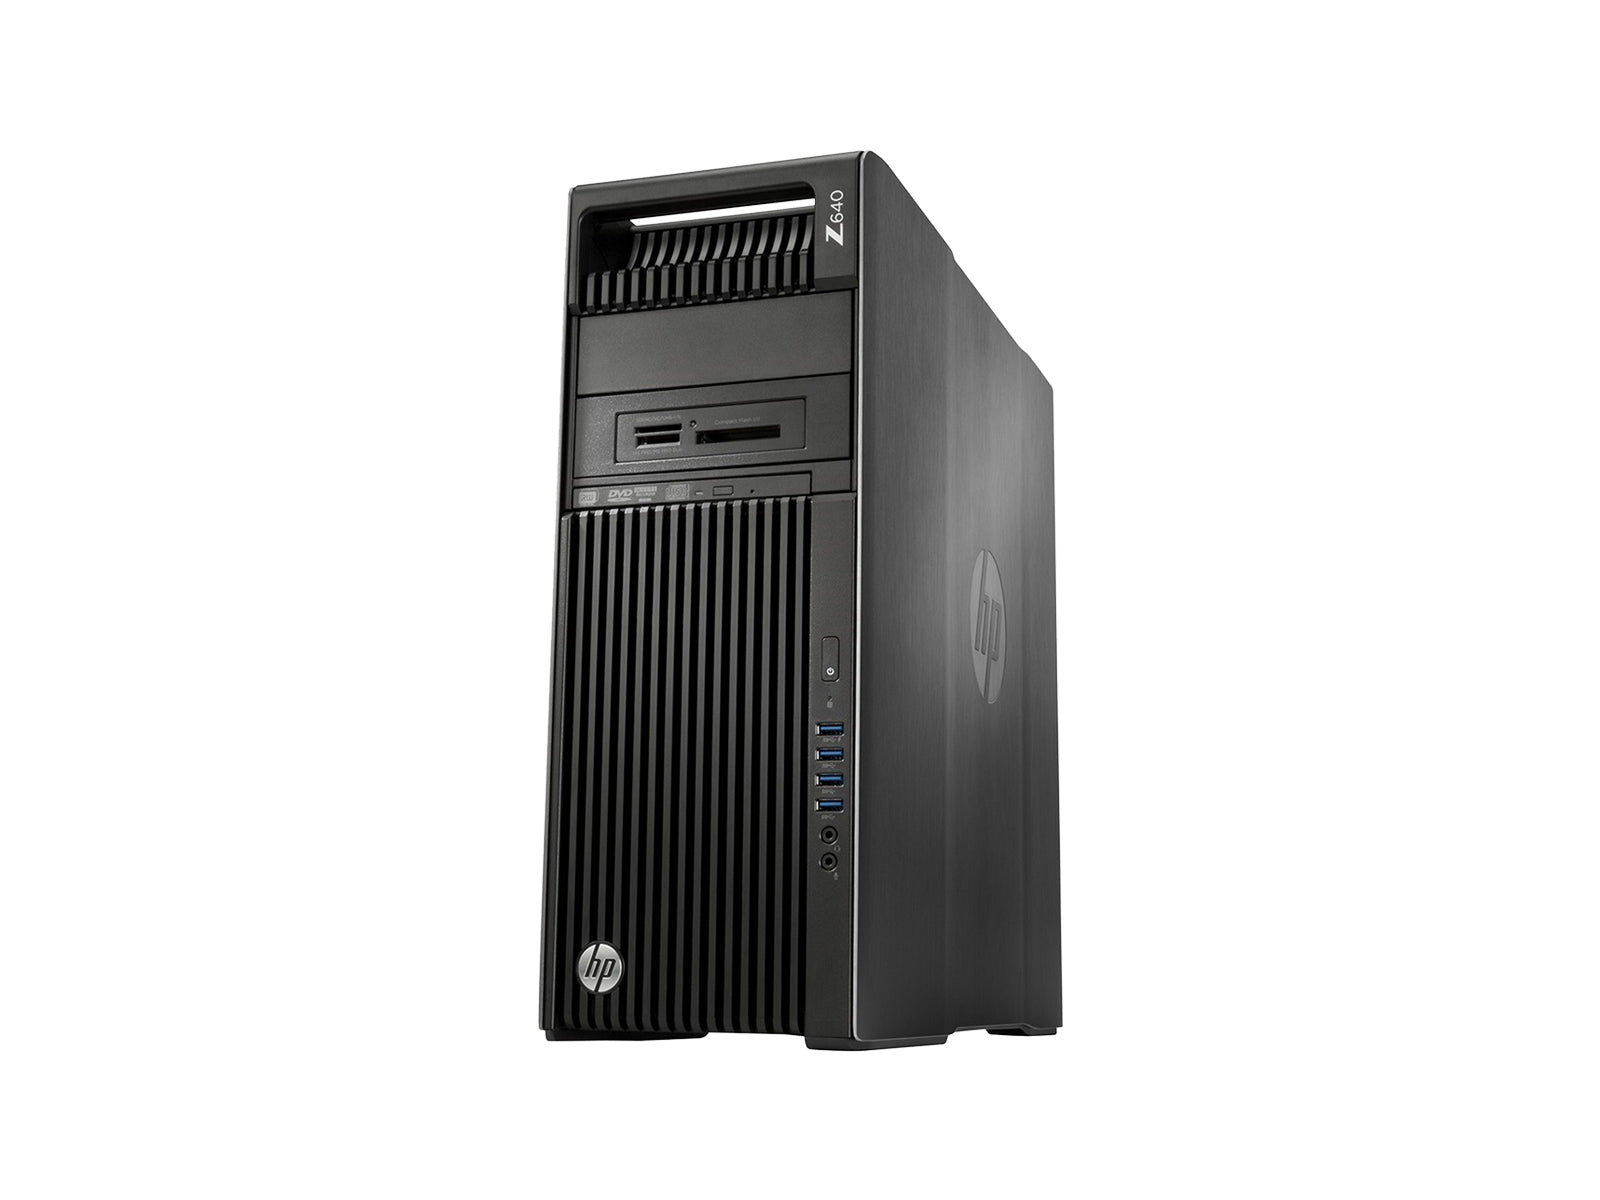 HP Z640 워크스테이션 | 인텔 제온 E5-2640 | 64GB DDR4 | 500GB SSD | AMD W5100 | Win10 프로